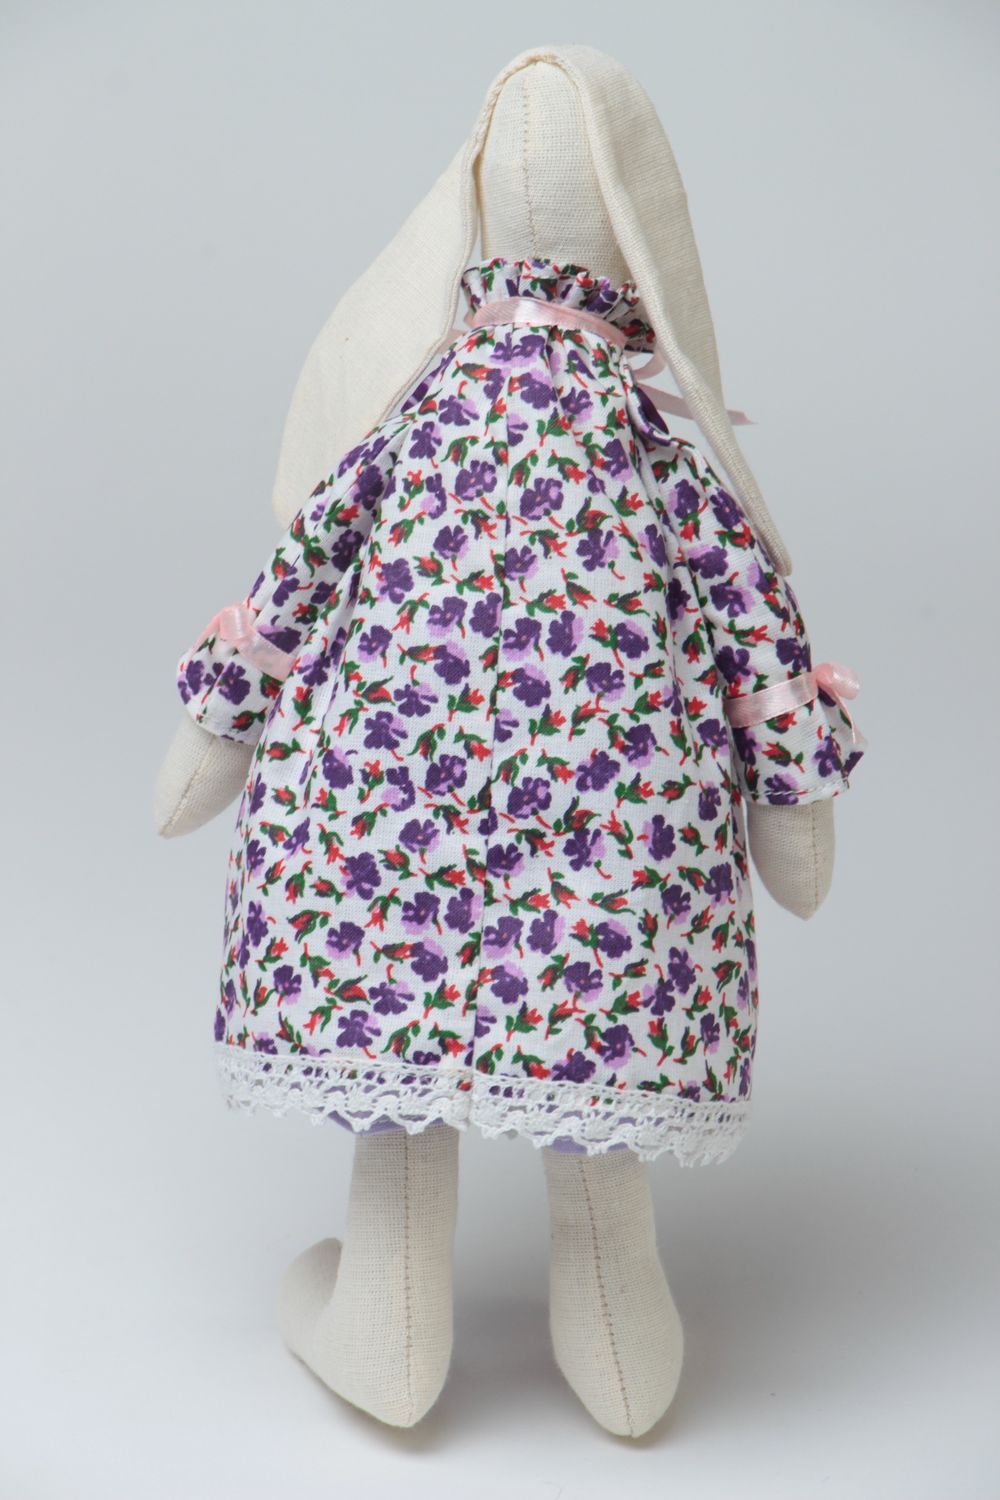 Peluche hase en tissu faite main décorative originale pour enfant décoration photo 4